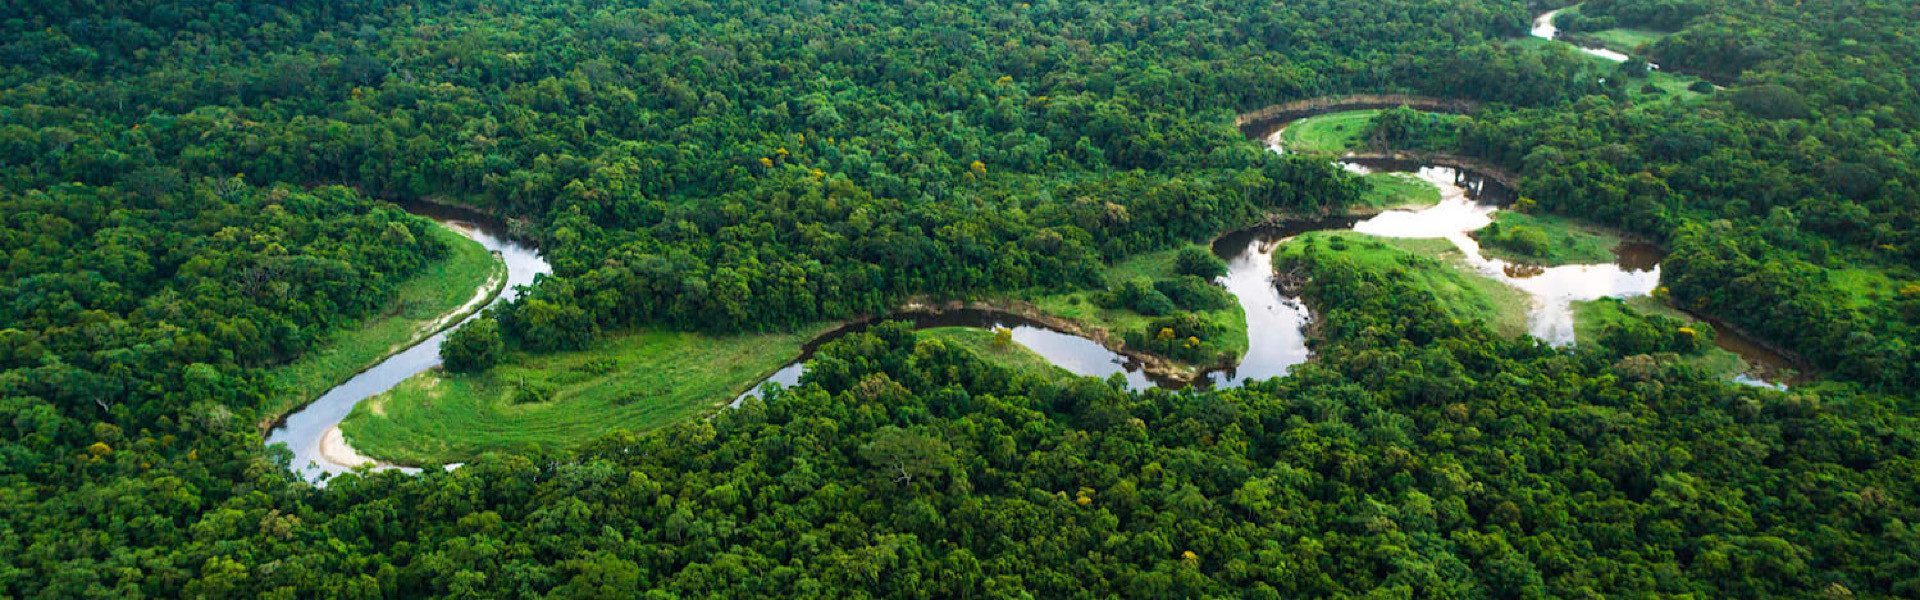 Dia da Amazônia: maior floresta tropical do planeta precisa de atenção